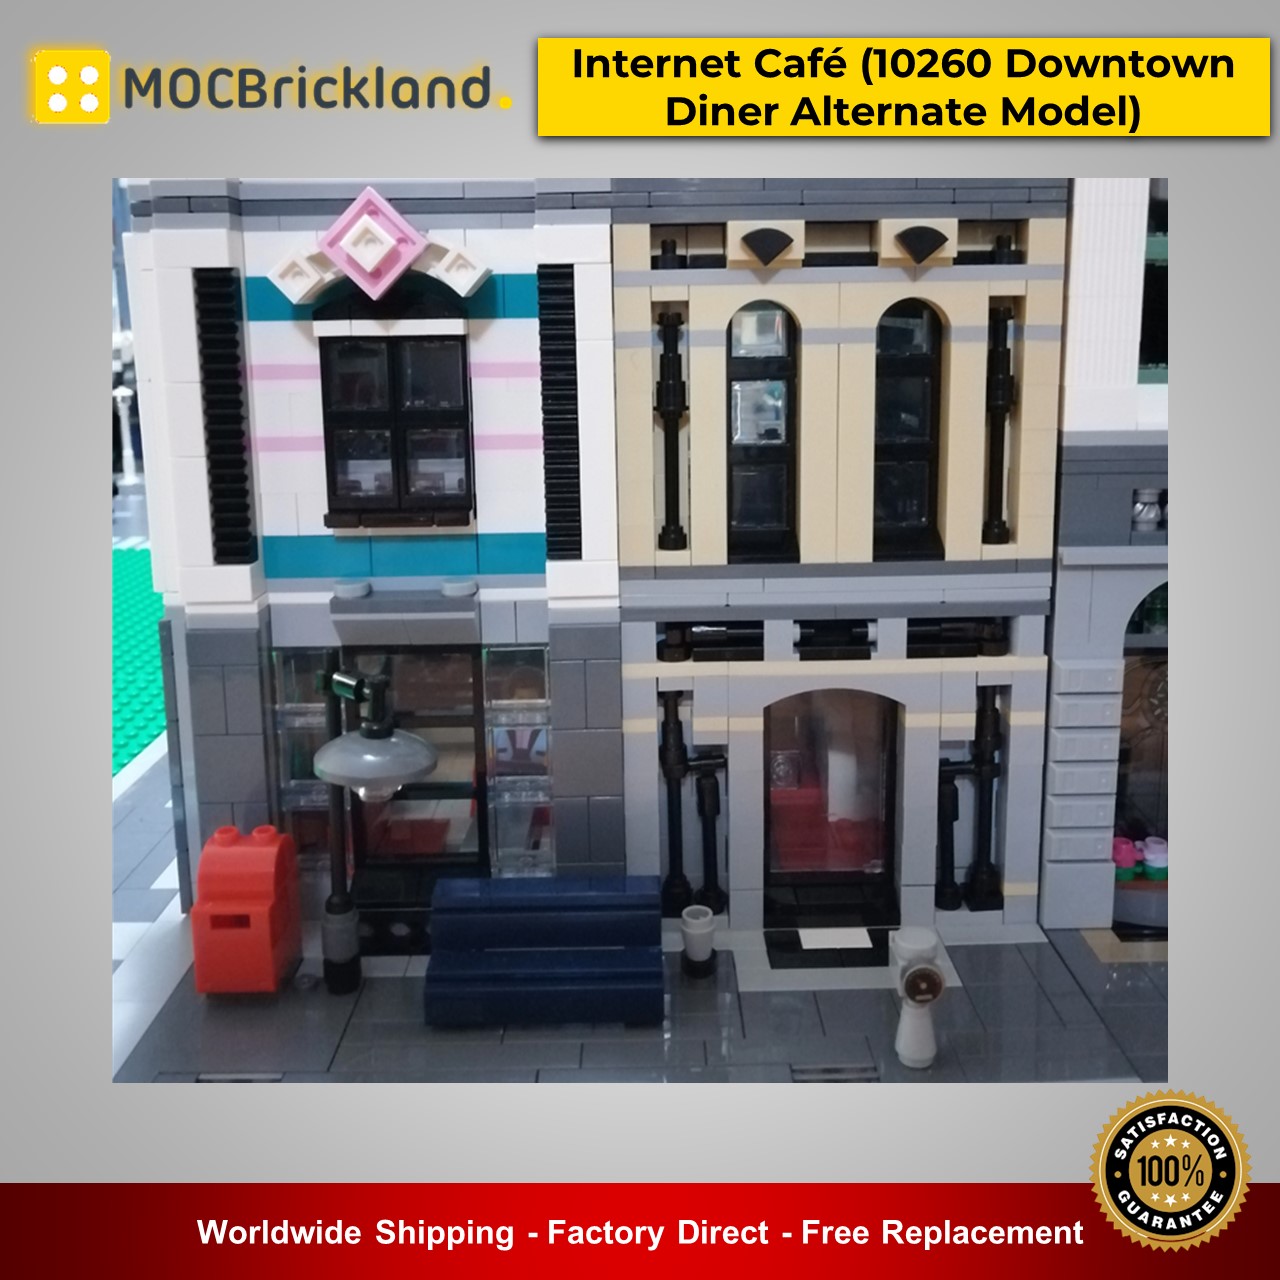 modular building moc 19379 internet caf 10260 downtown diner alternate model modular by huaojozu mocbrickland 6381